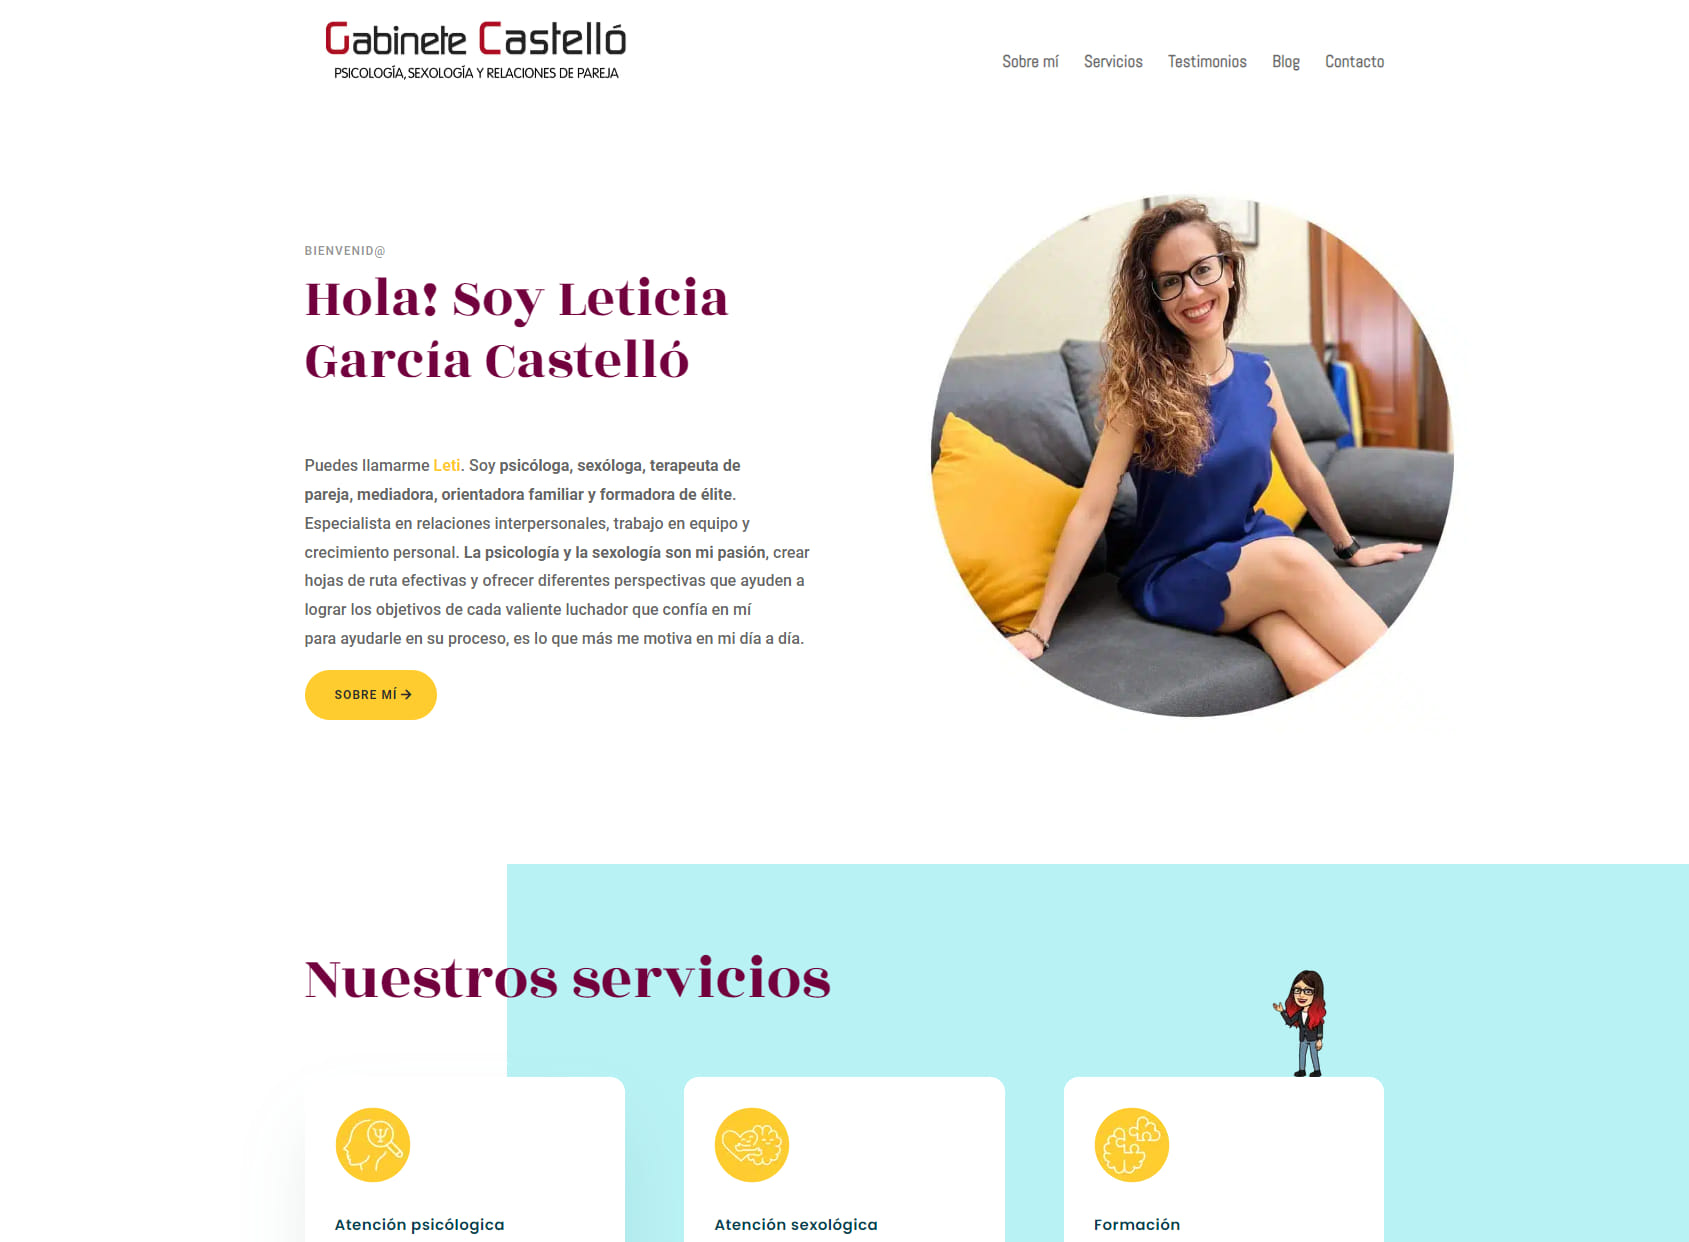 Leticia García Castelló Psicólogo - Sexólogo Salamanca / Gabinete Castelló - Psicología y Relaciones de pareja